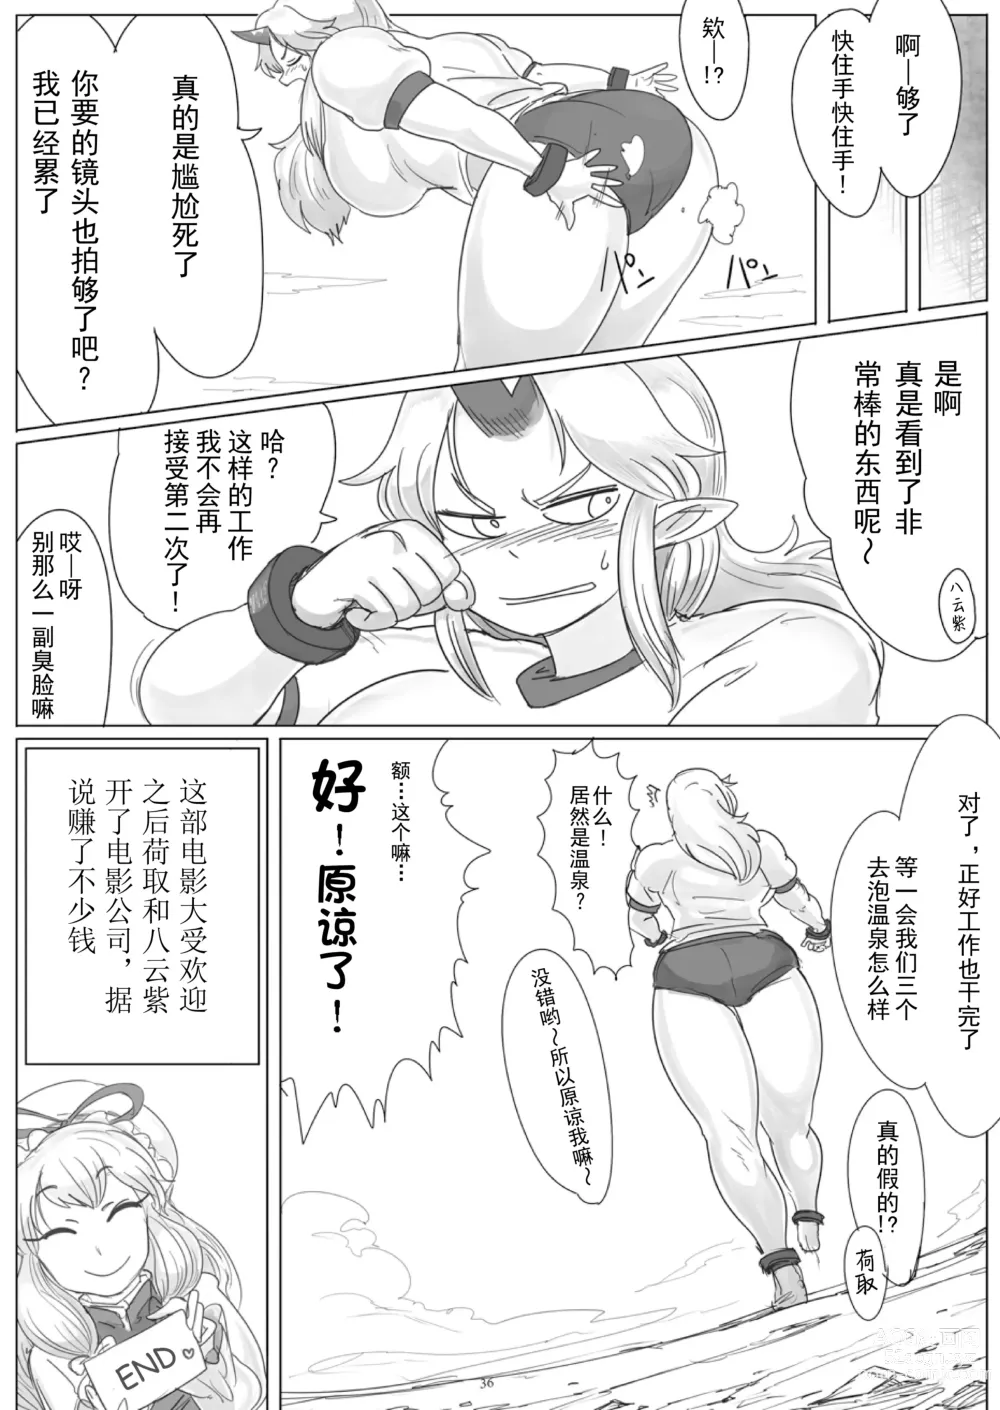 Page 18 of doujinshi Kairiki Rankyaku